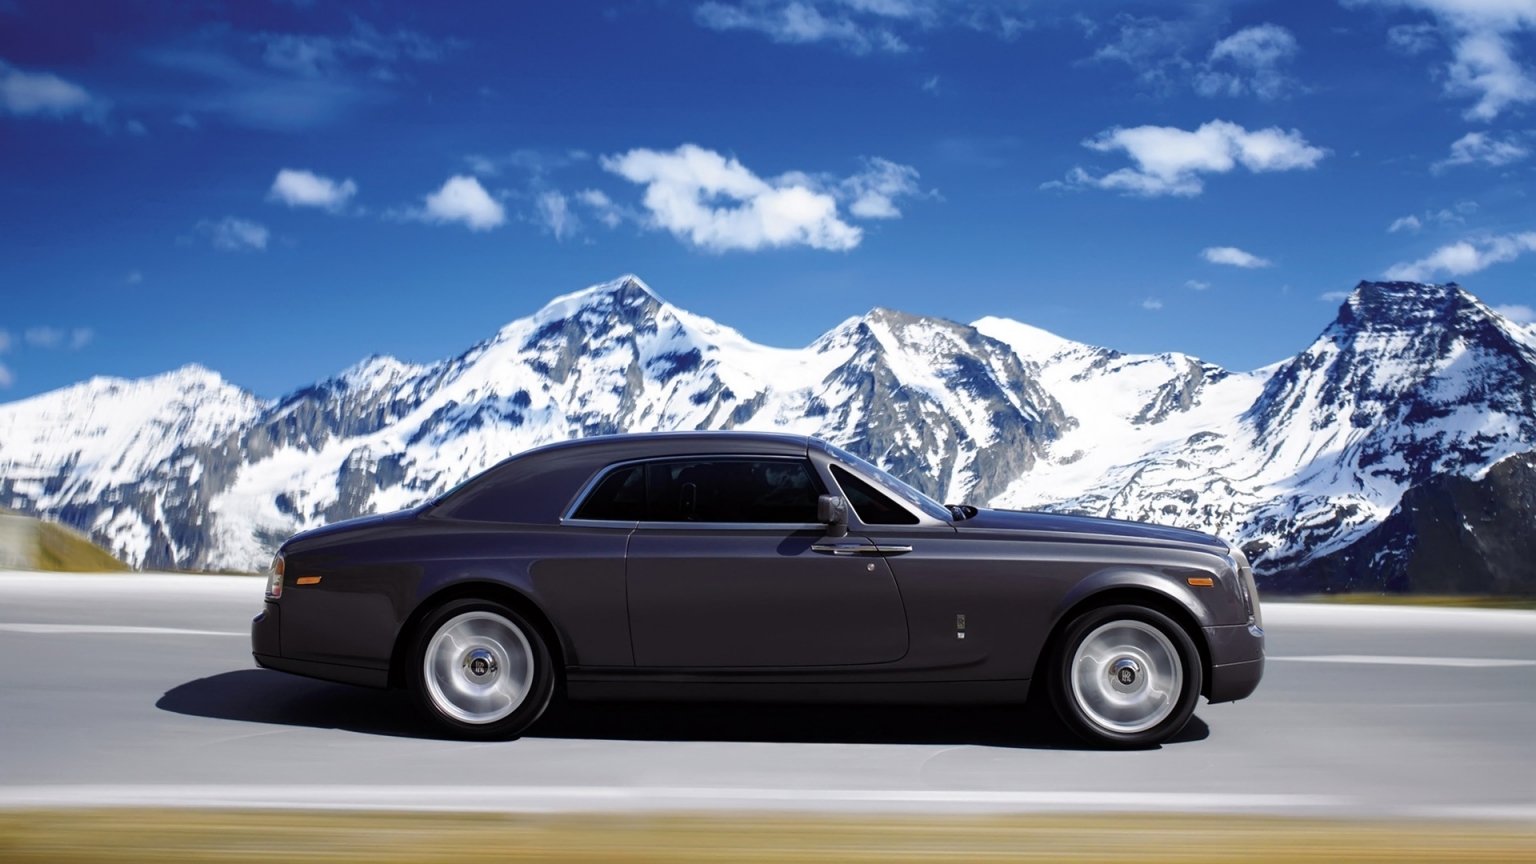 Rolls Royce Phantom Coupe 2010 for 1536 x 864 HDTV resolution